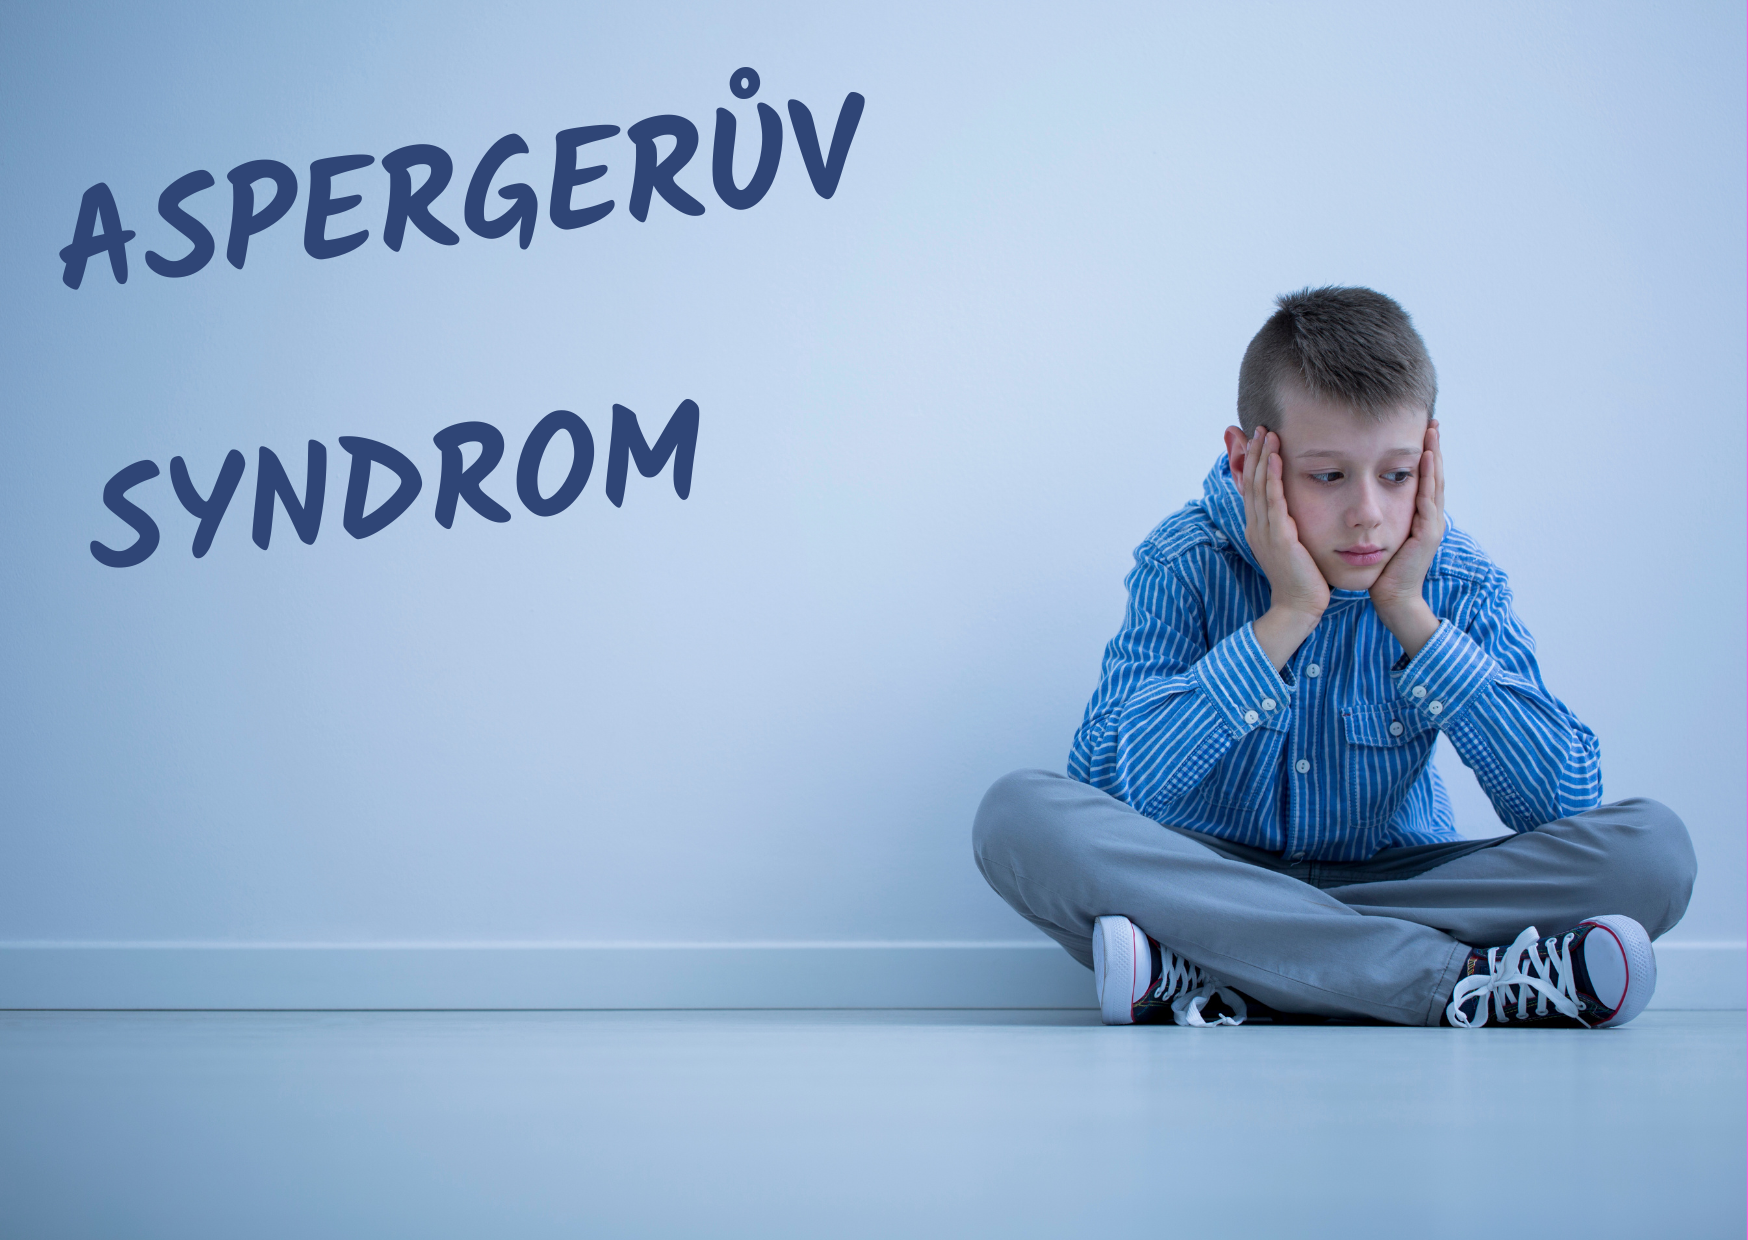 Aspergeruv-syndrom